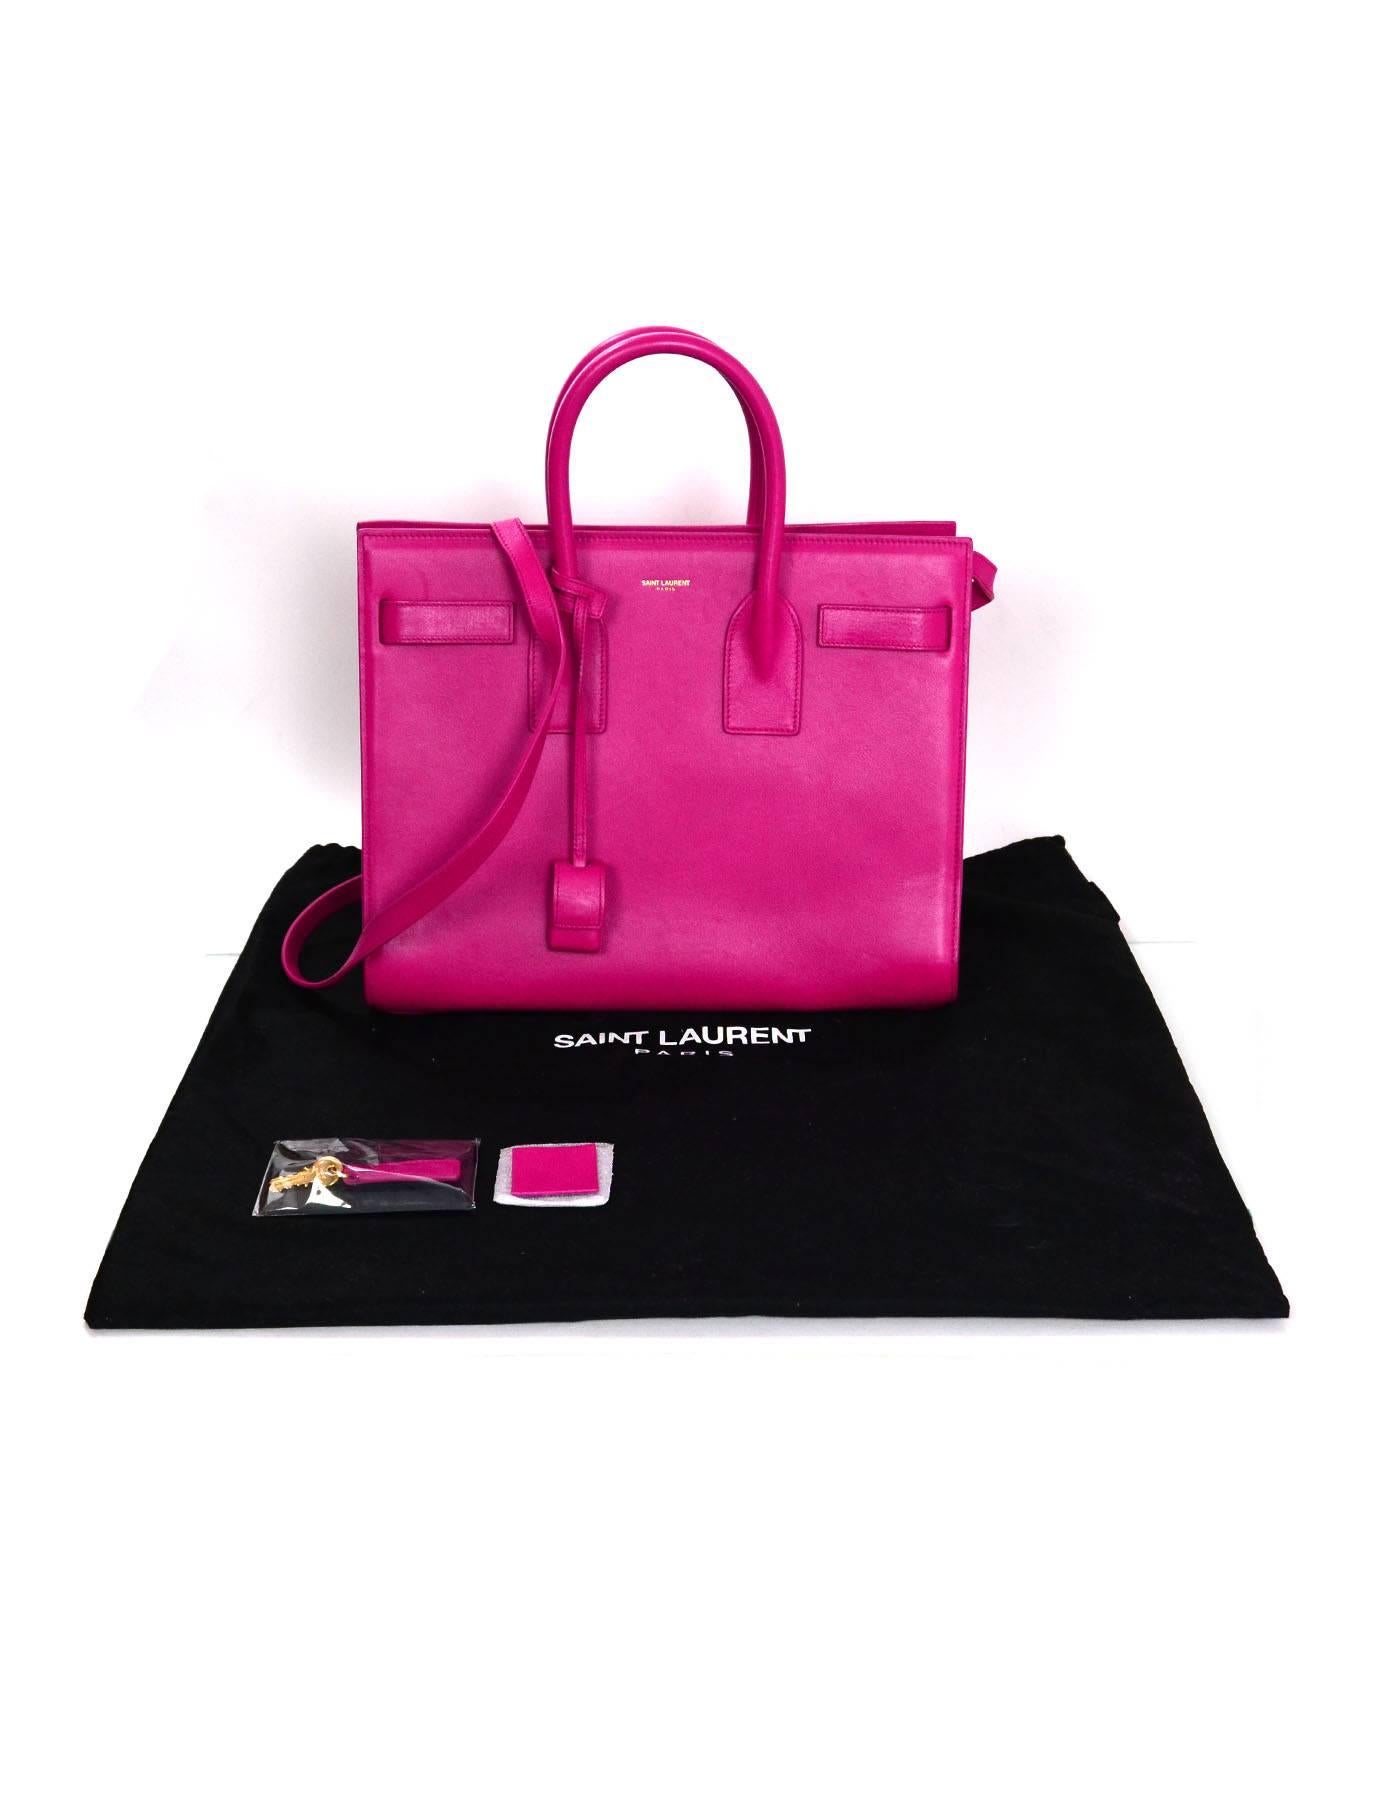 Saint Laurent Pink Small Sac De Jour Tote Bag w/ Strap 6